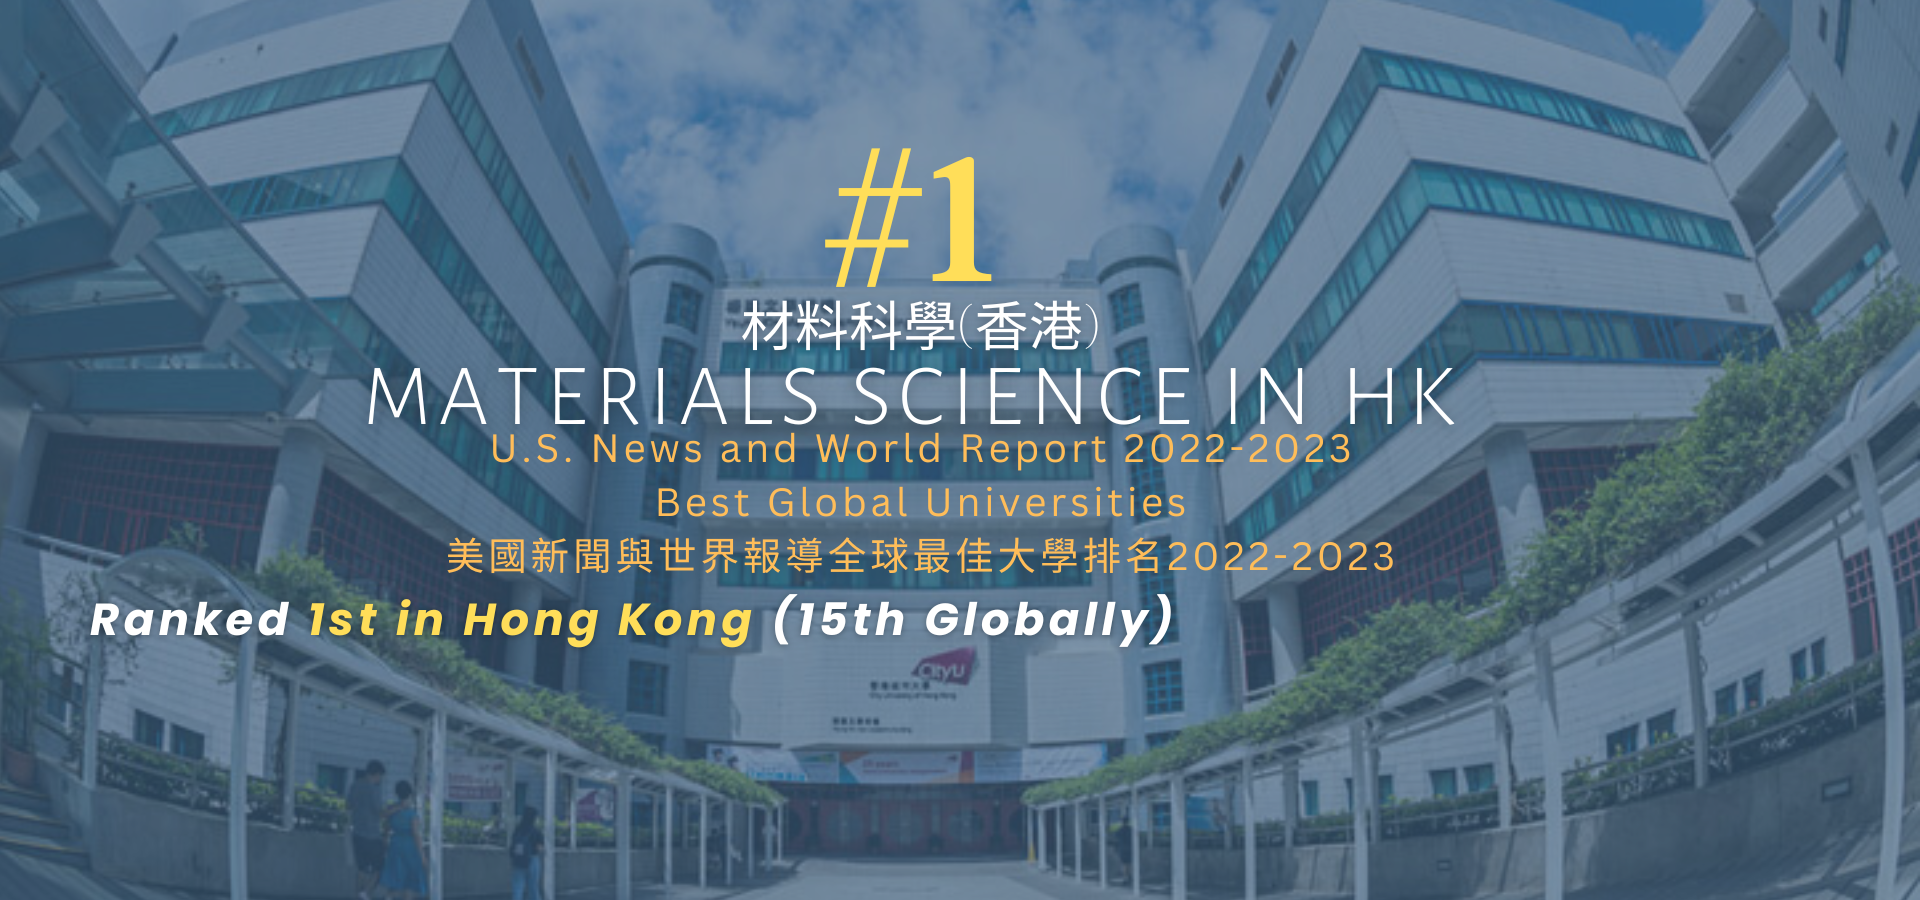 城大在《美國新聞與世界報導》材料科學領域世界大學綜合排名中名列香港第一